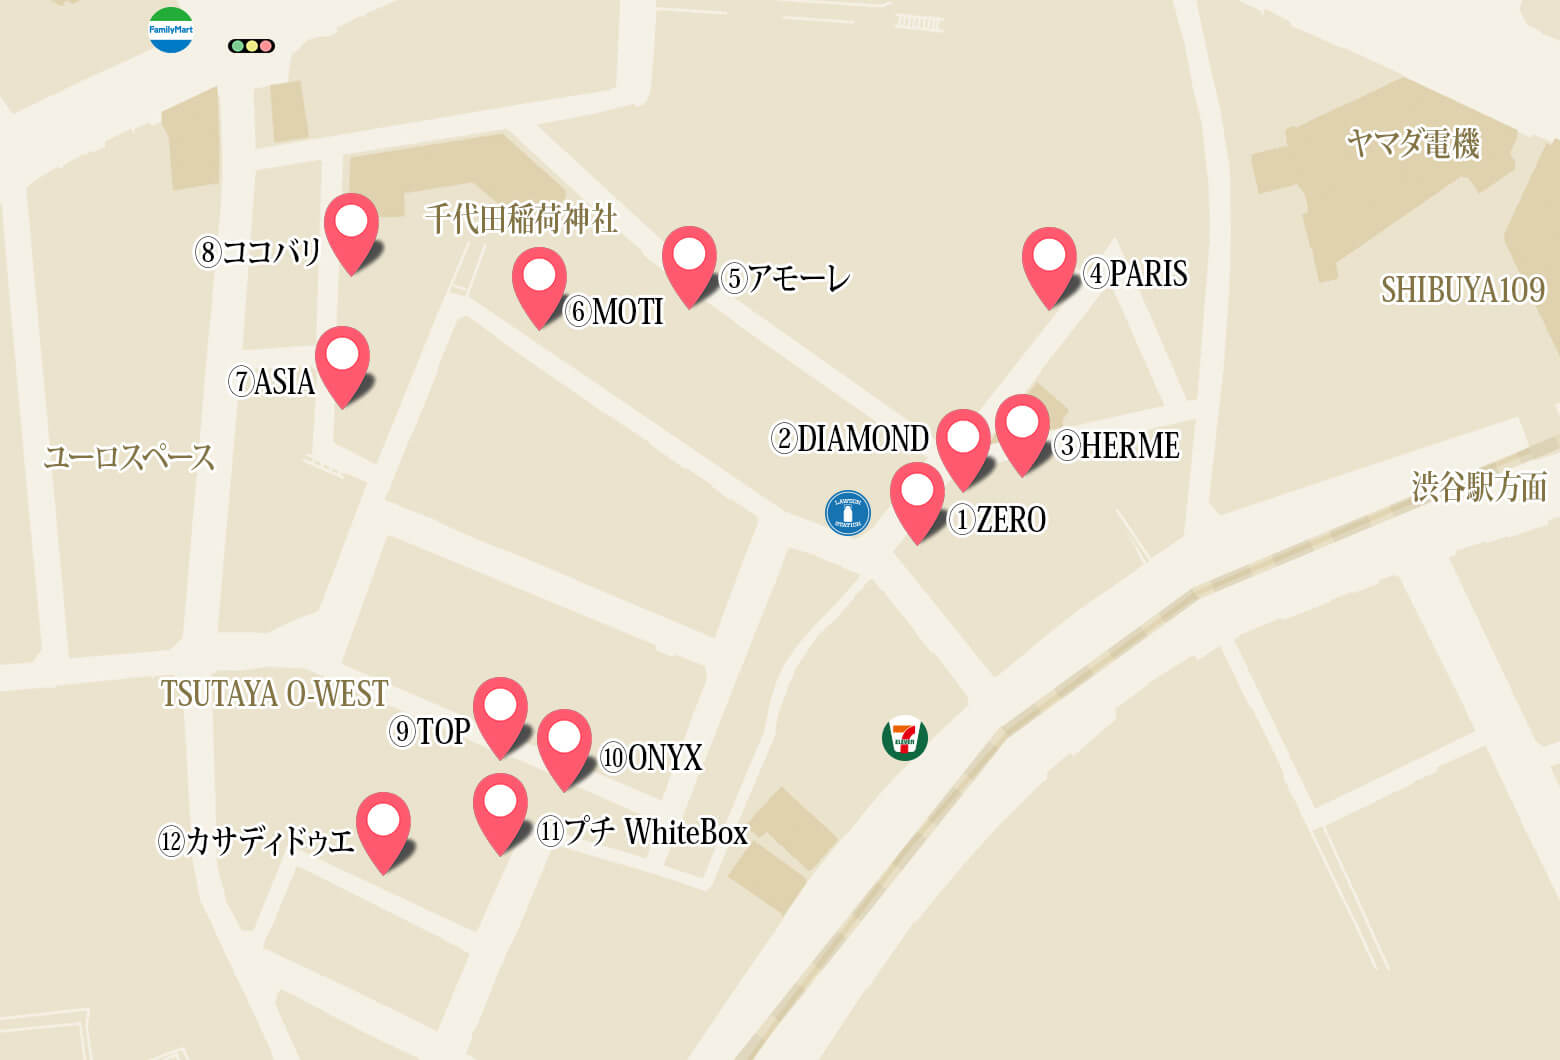 渋谷 風俗出張メンズエステ【アラマンダ】デリバリーアロママッサージで利用されているホテルの案内マップ